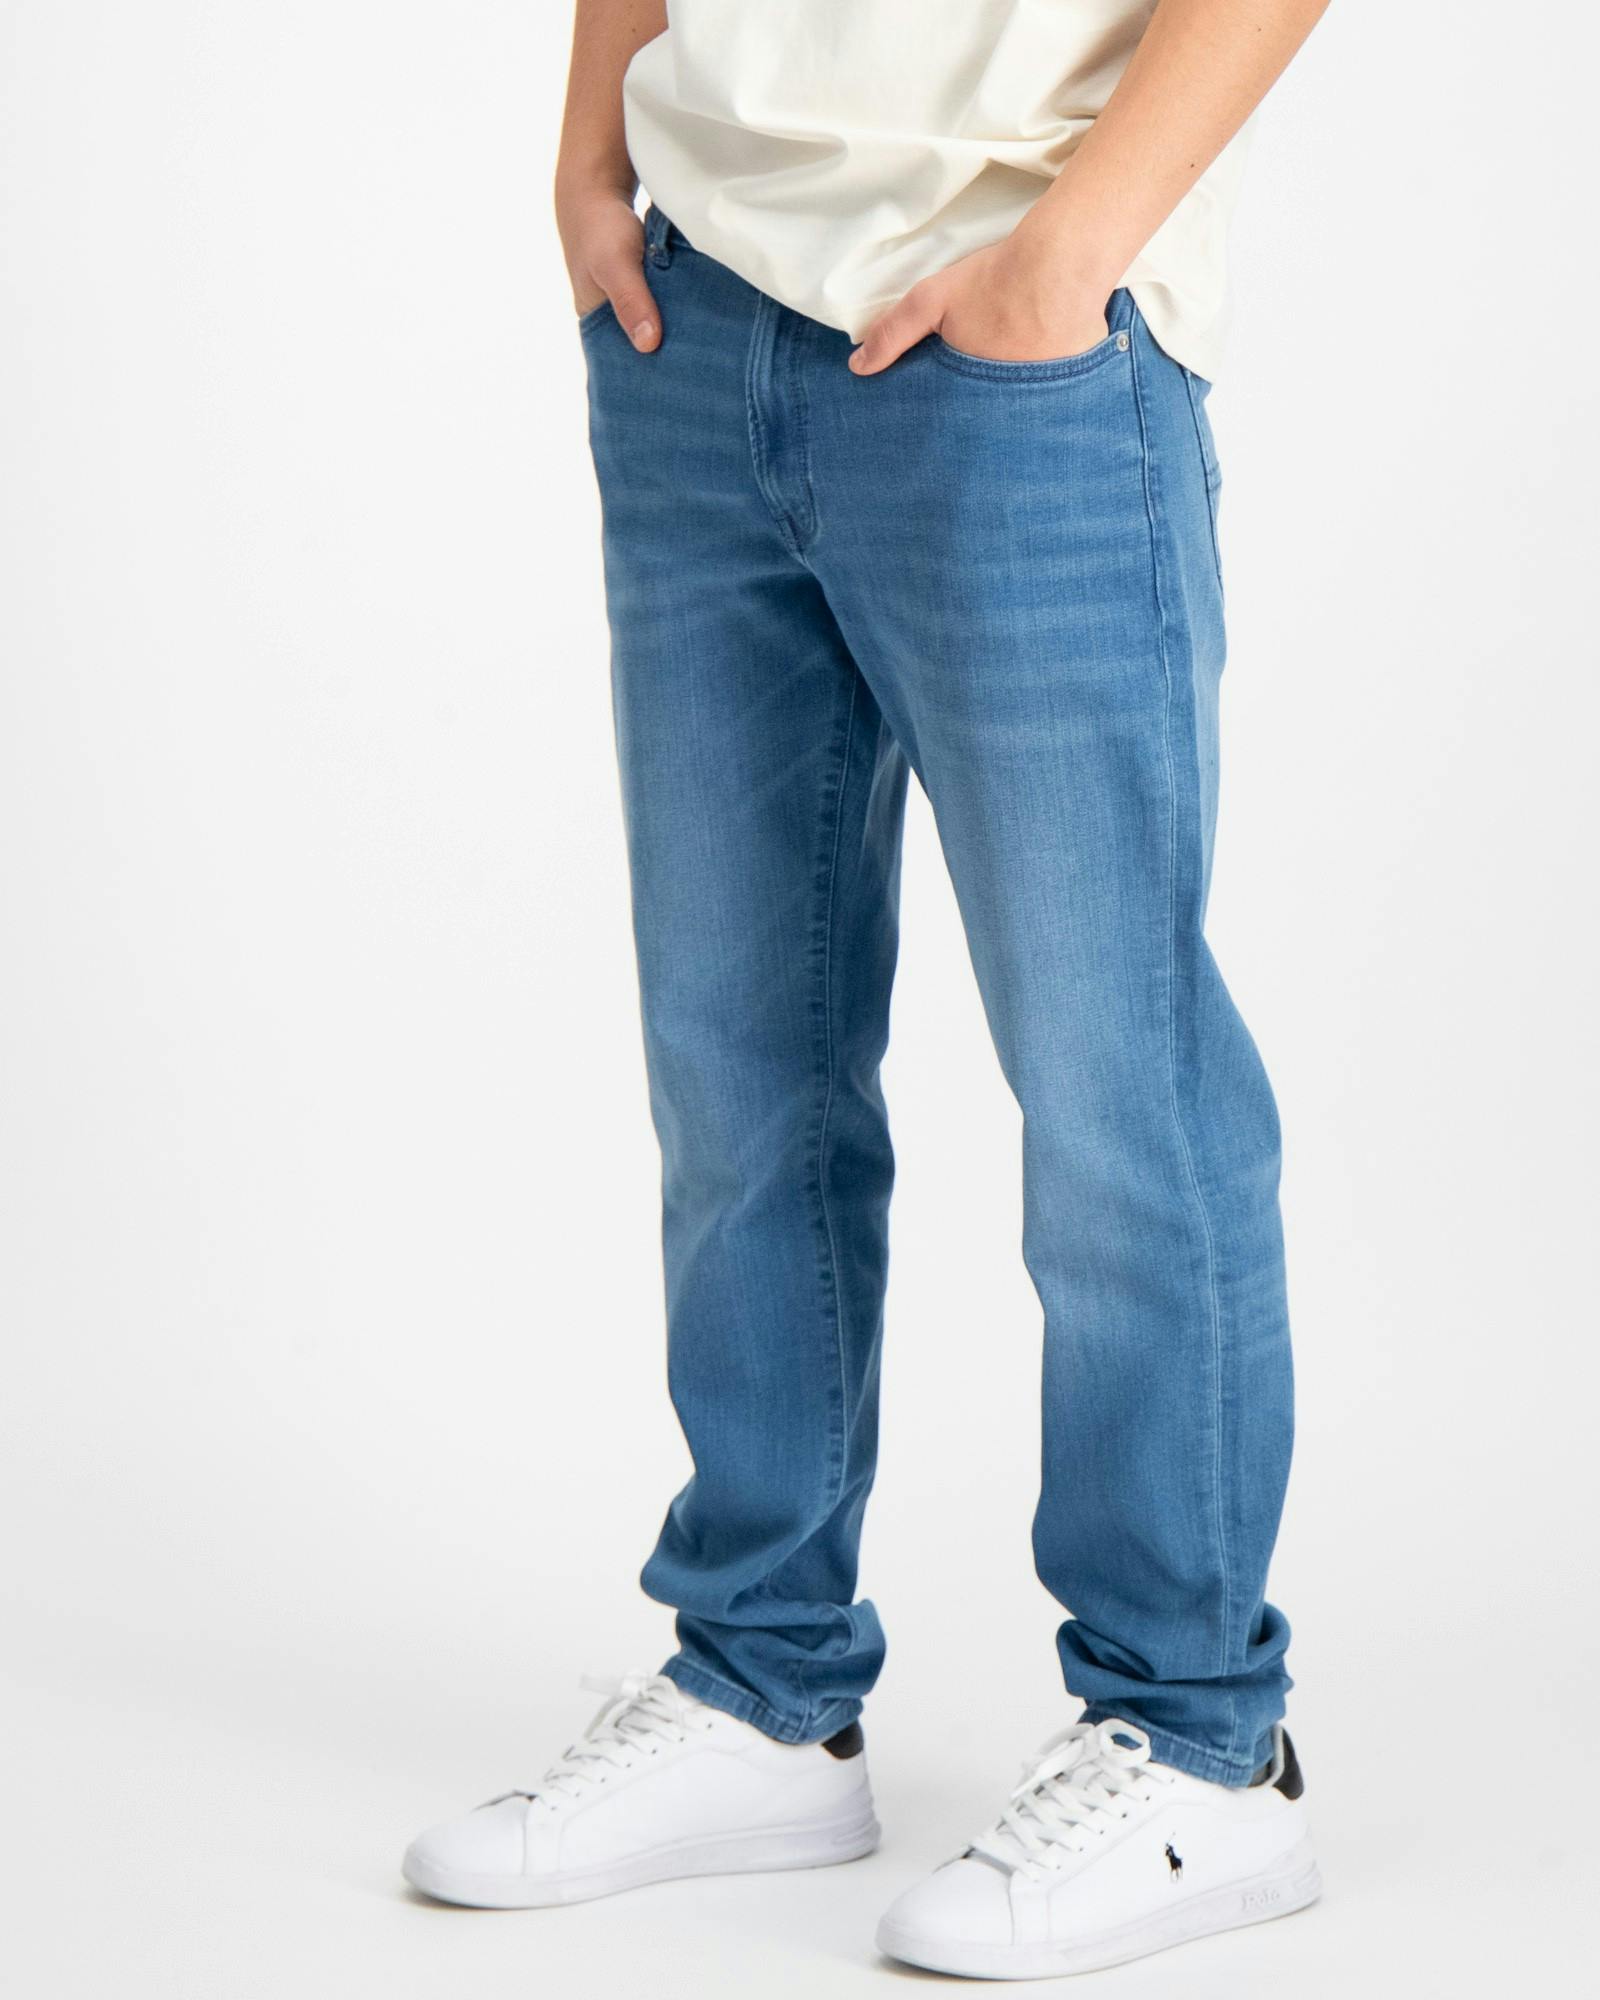 Tommy Hilfiger Jeans für Kinder und Kids Jugendliche | Brand Store